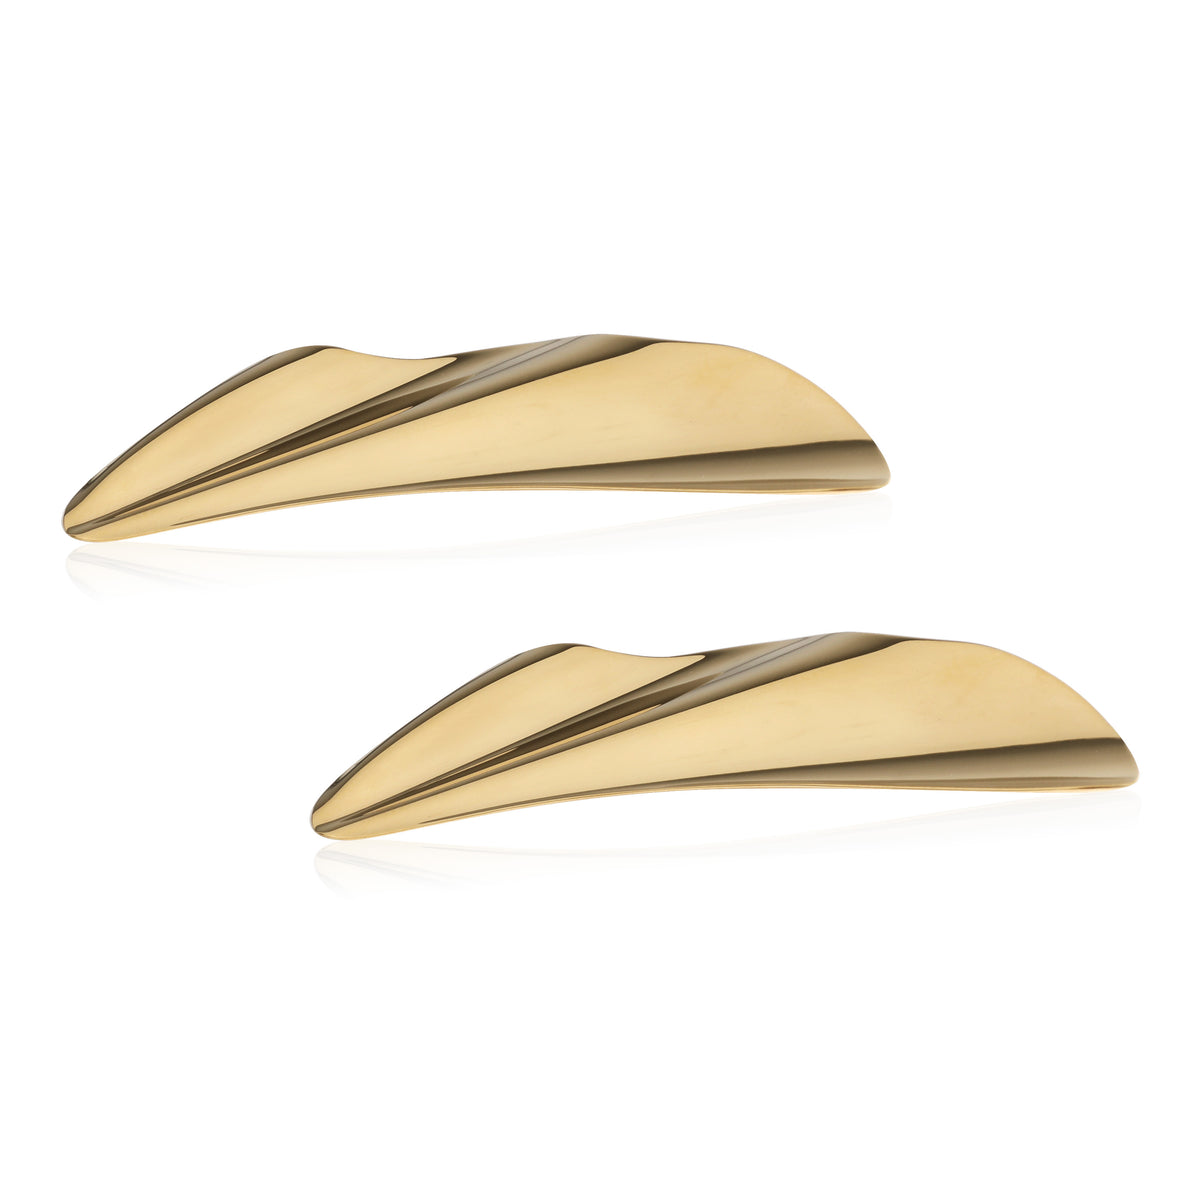 Tiffany & Co. Elsa Peretti High Tide Earrings in 18k Yellow Gold